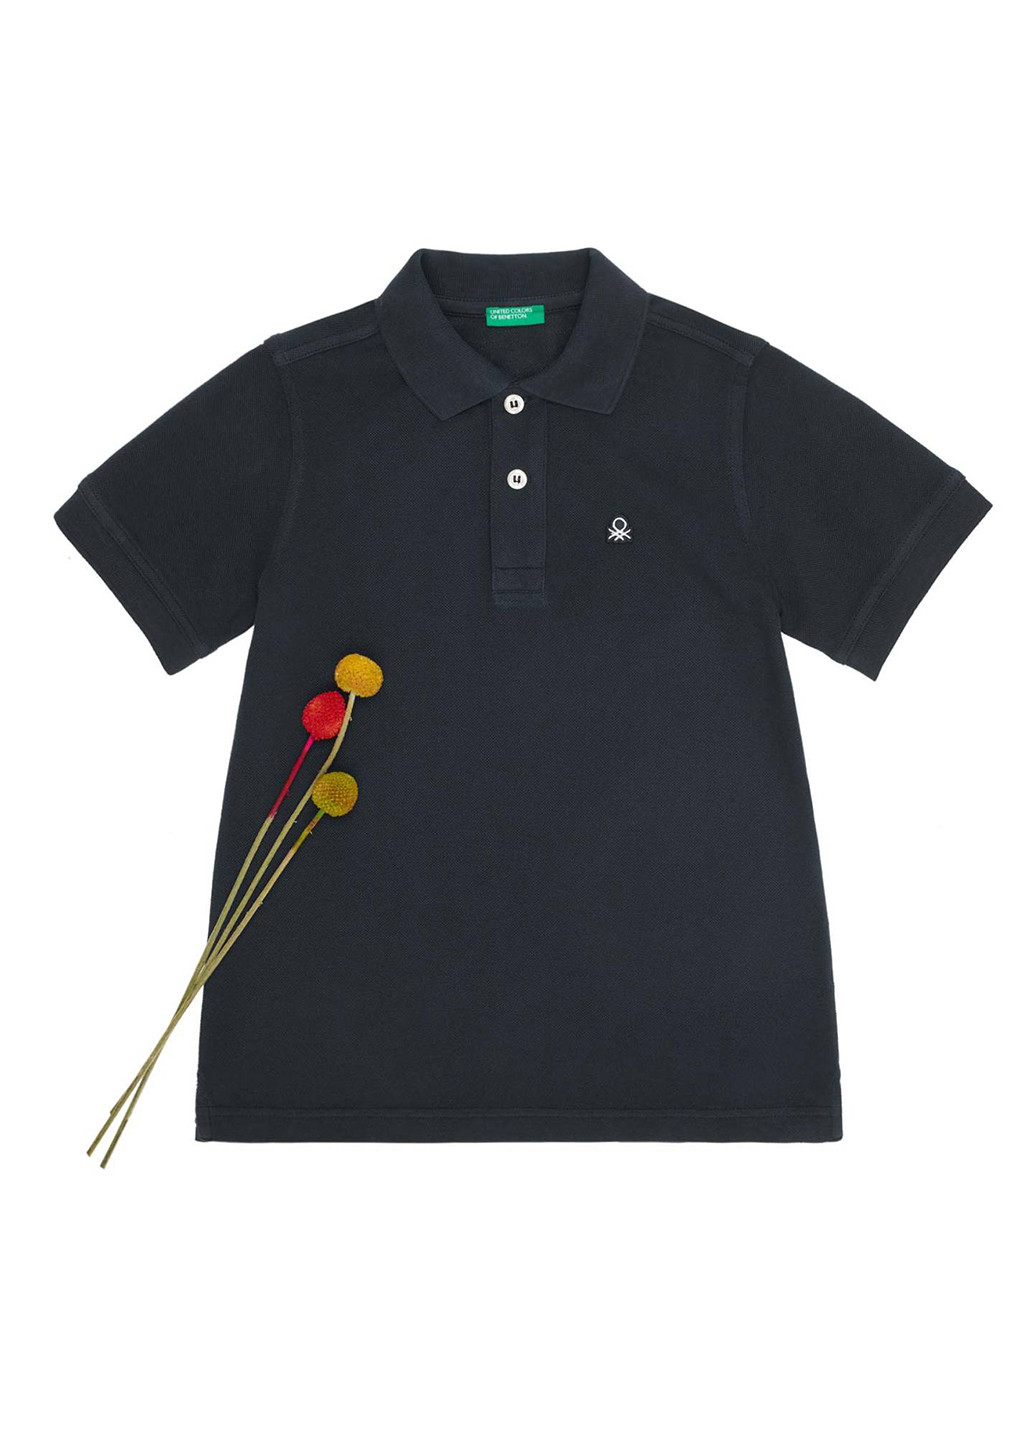 Черная детская футболка-поло для мальчика United Colors of Benetton с логотипом